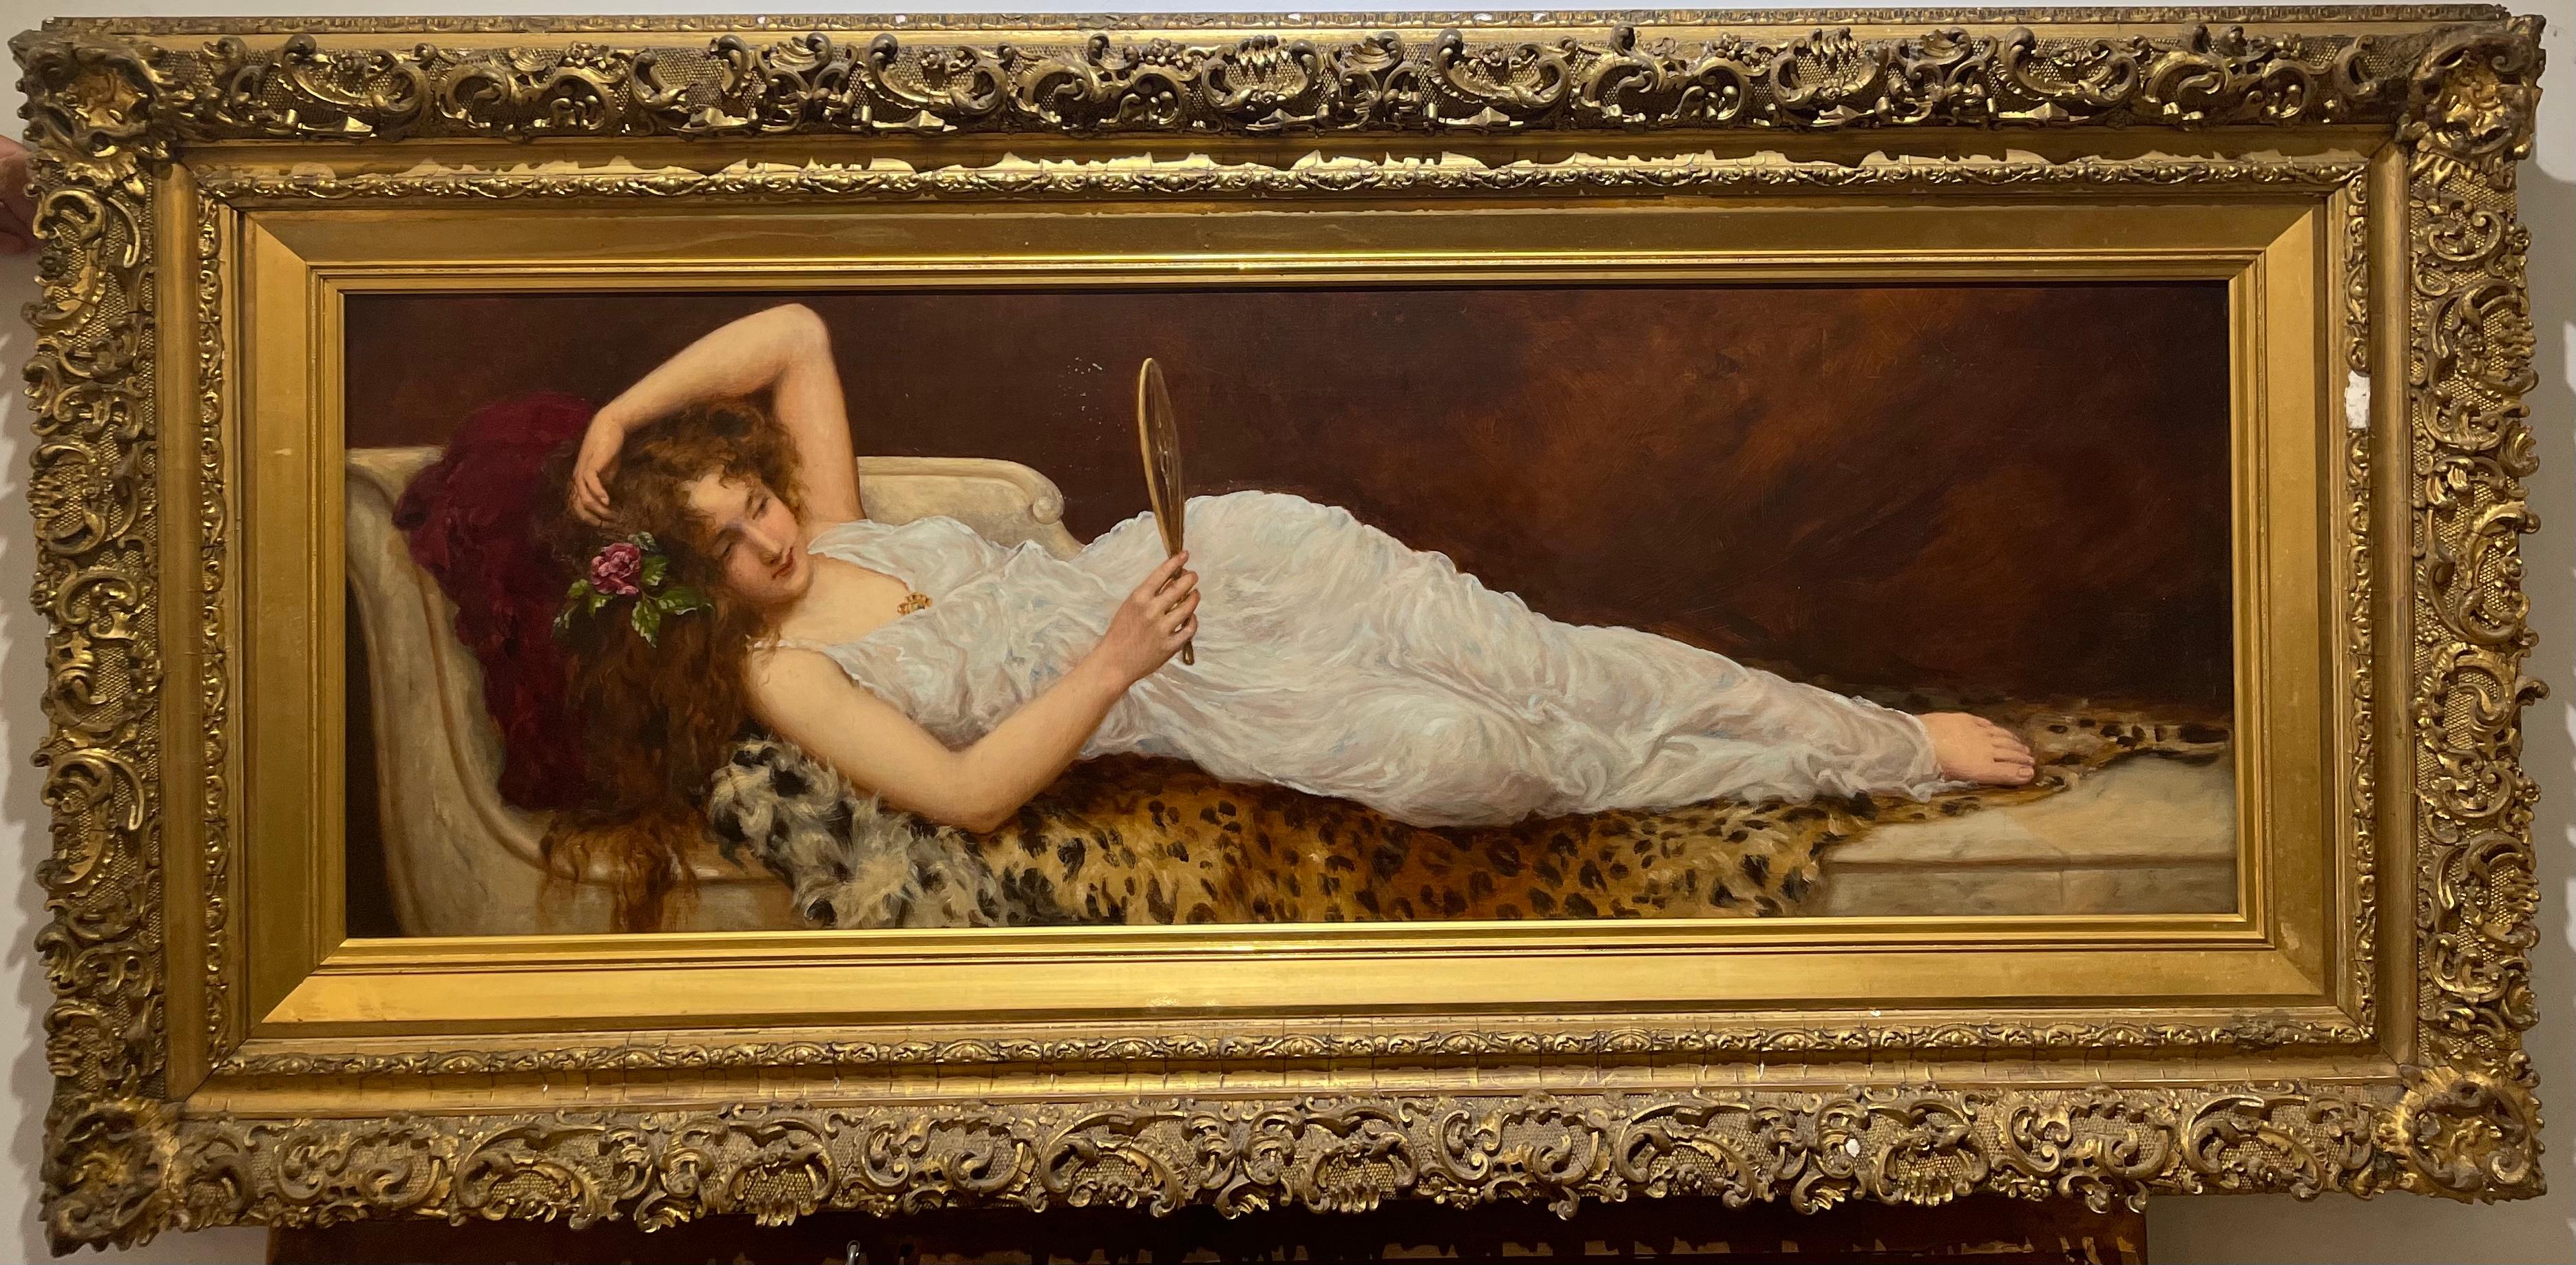 Ancienne peinture orientaliste d'une jeune fille couchée sur une robe Empire - Painting de William Oliver